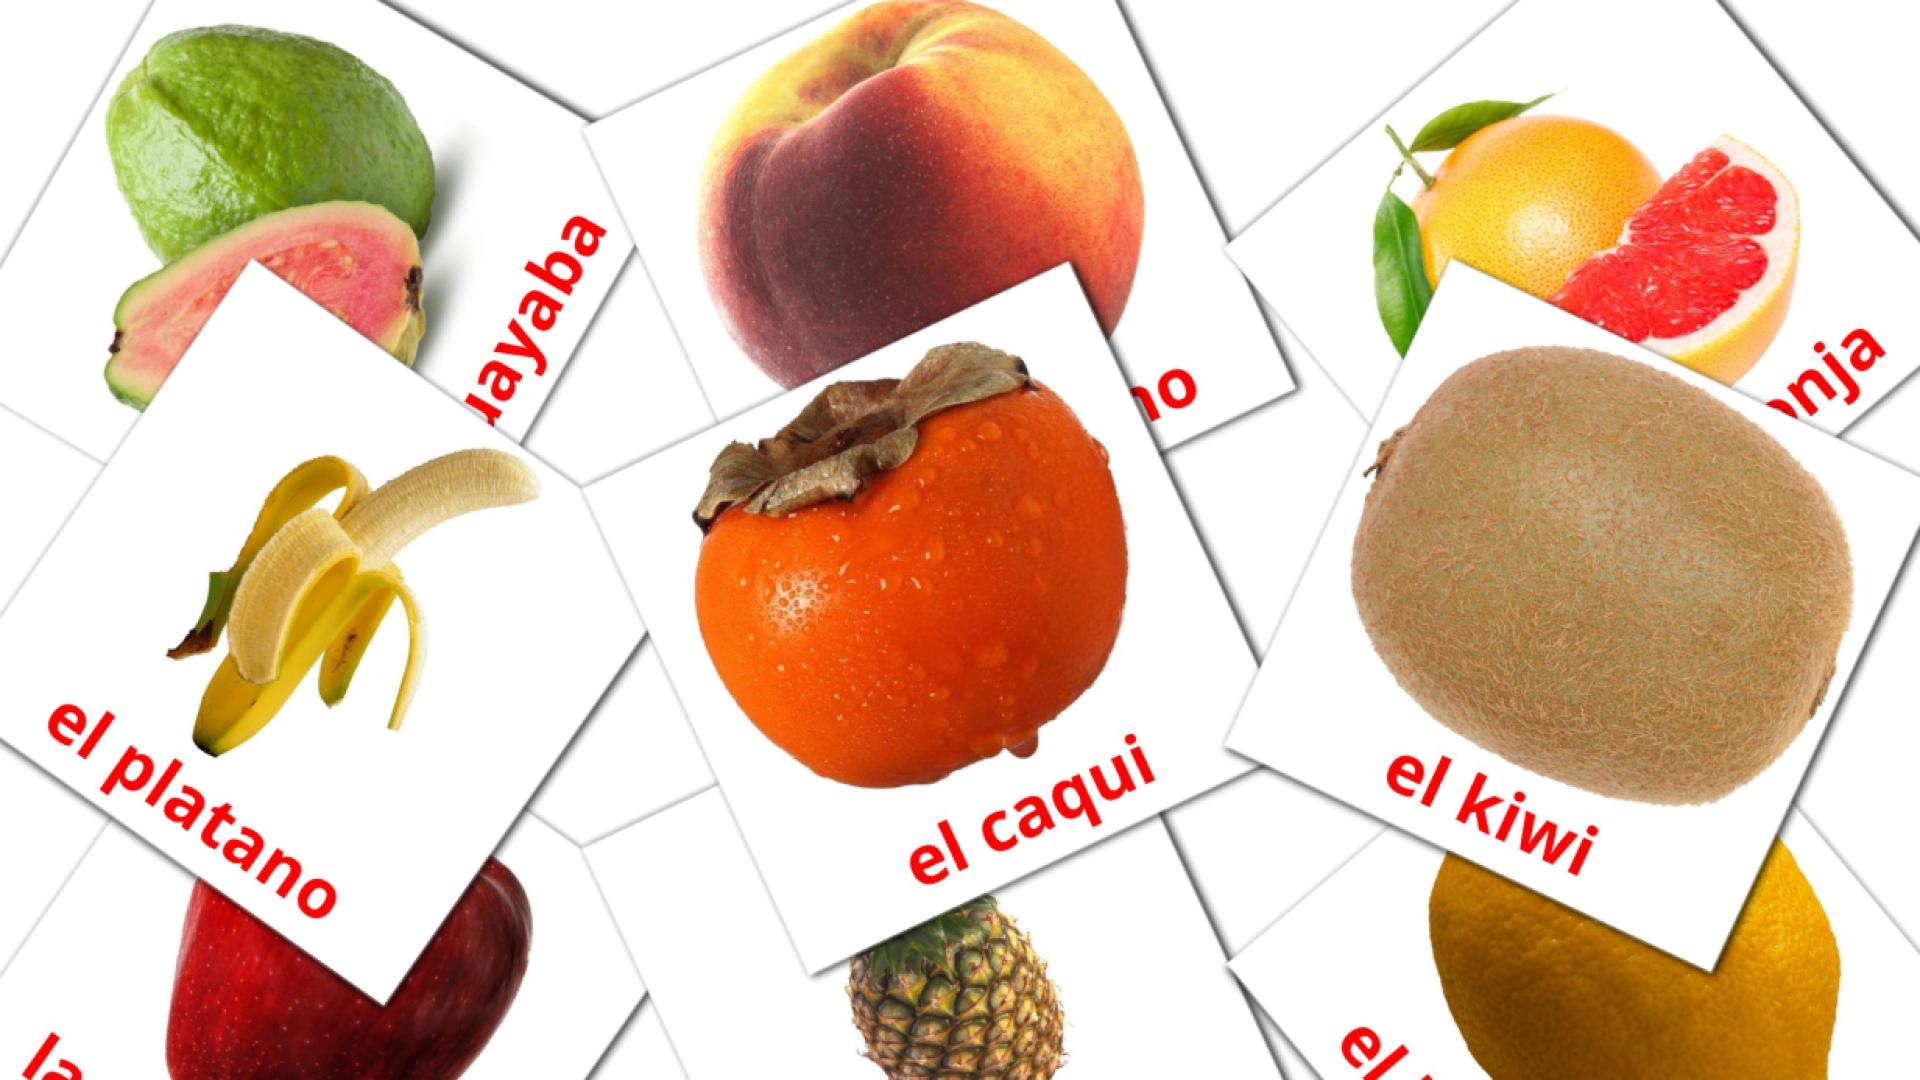 20 Flashcards de Frutas